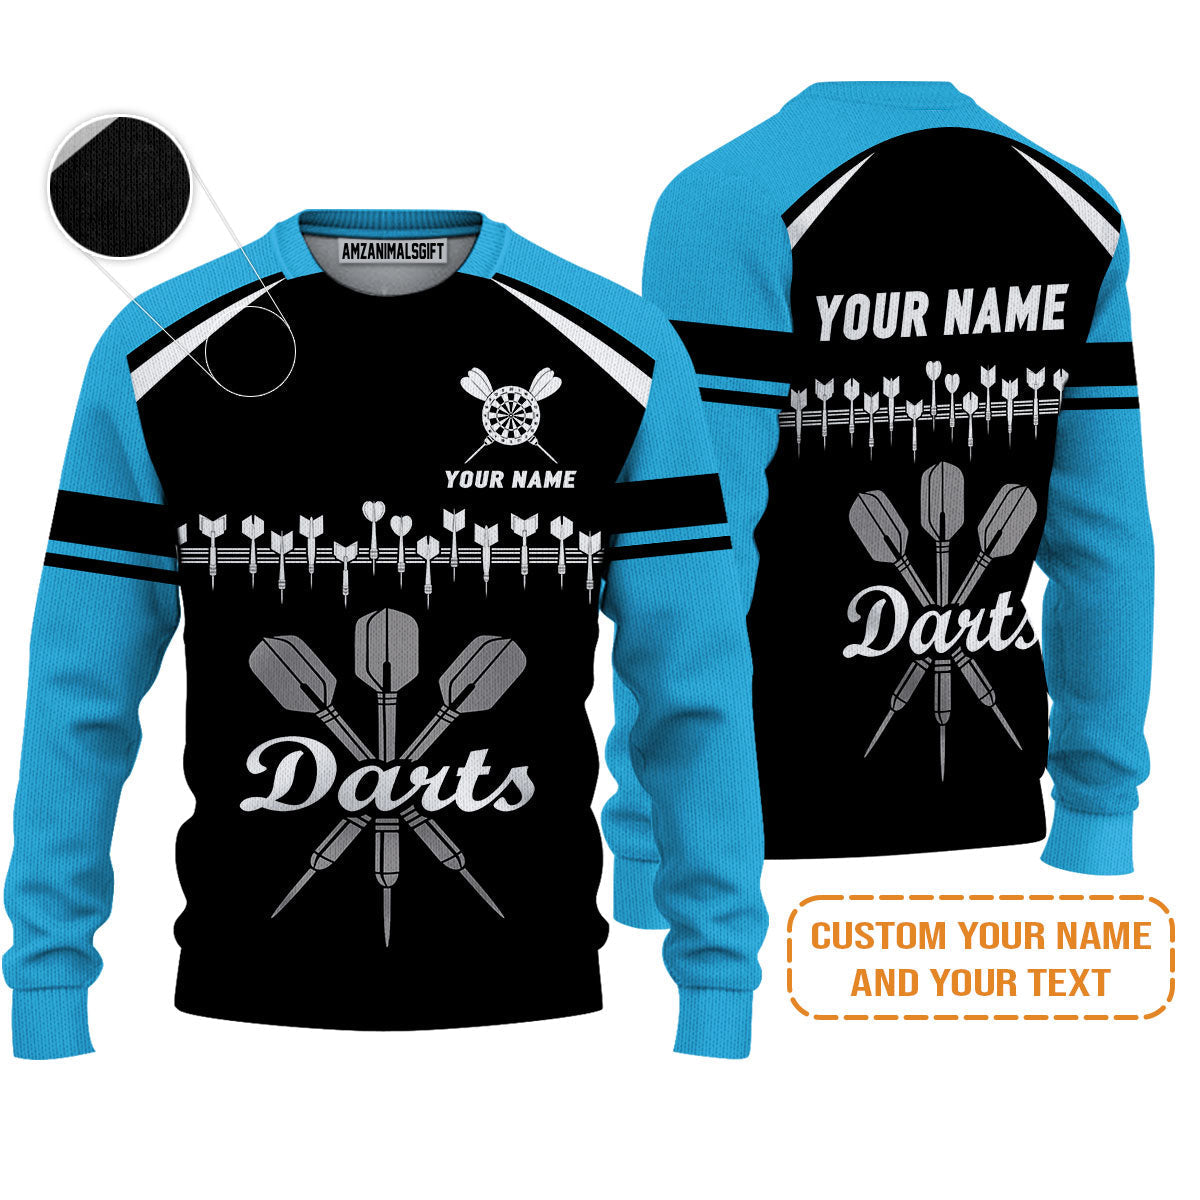 Customized Name & Text Darts Sweater, Personalized Darts Team Blue Sweater - Perfect Gift For Darts Lovers